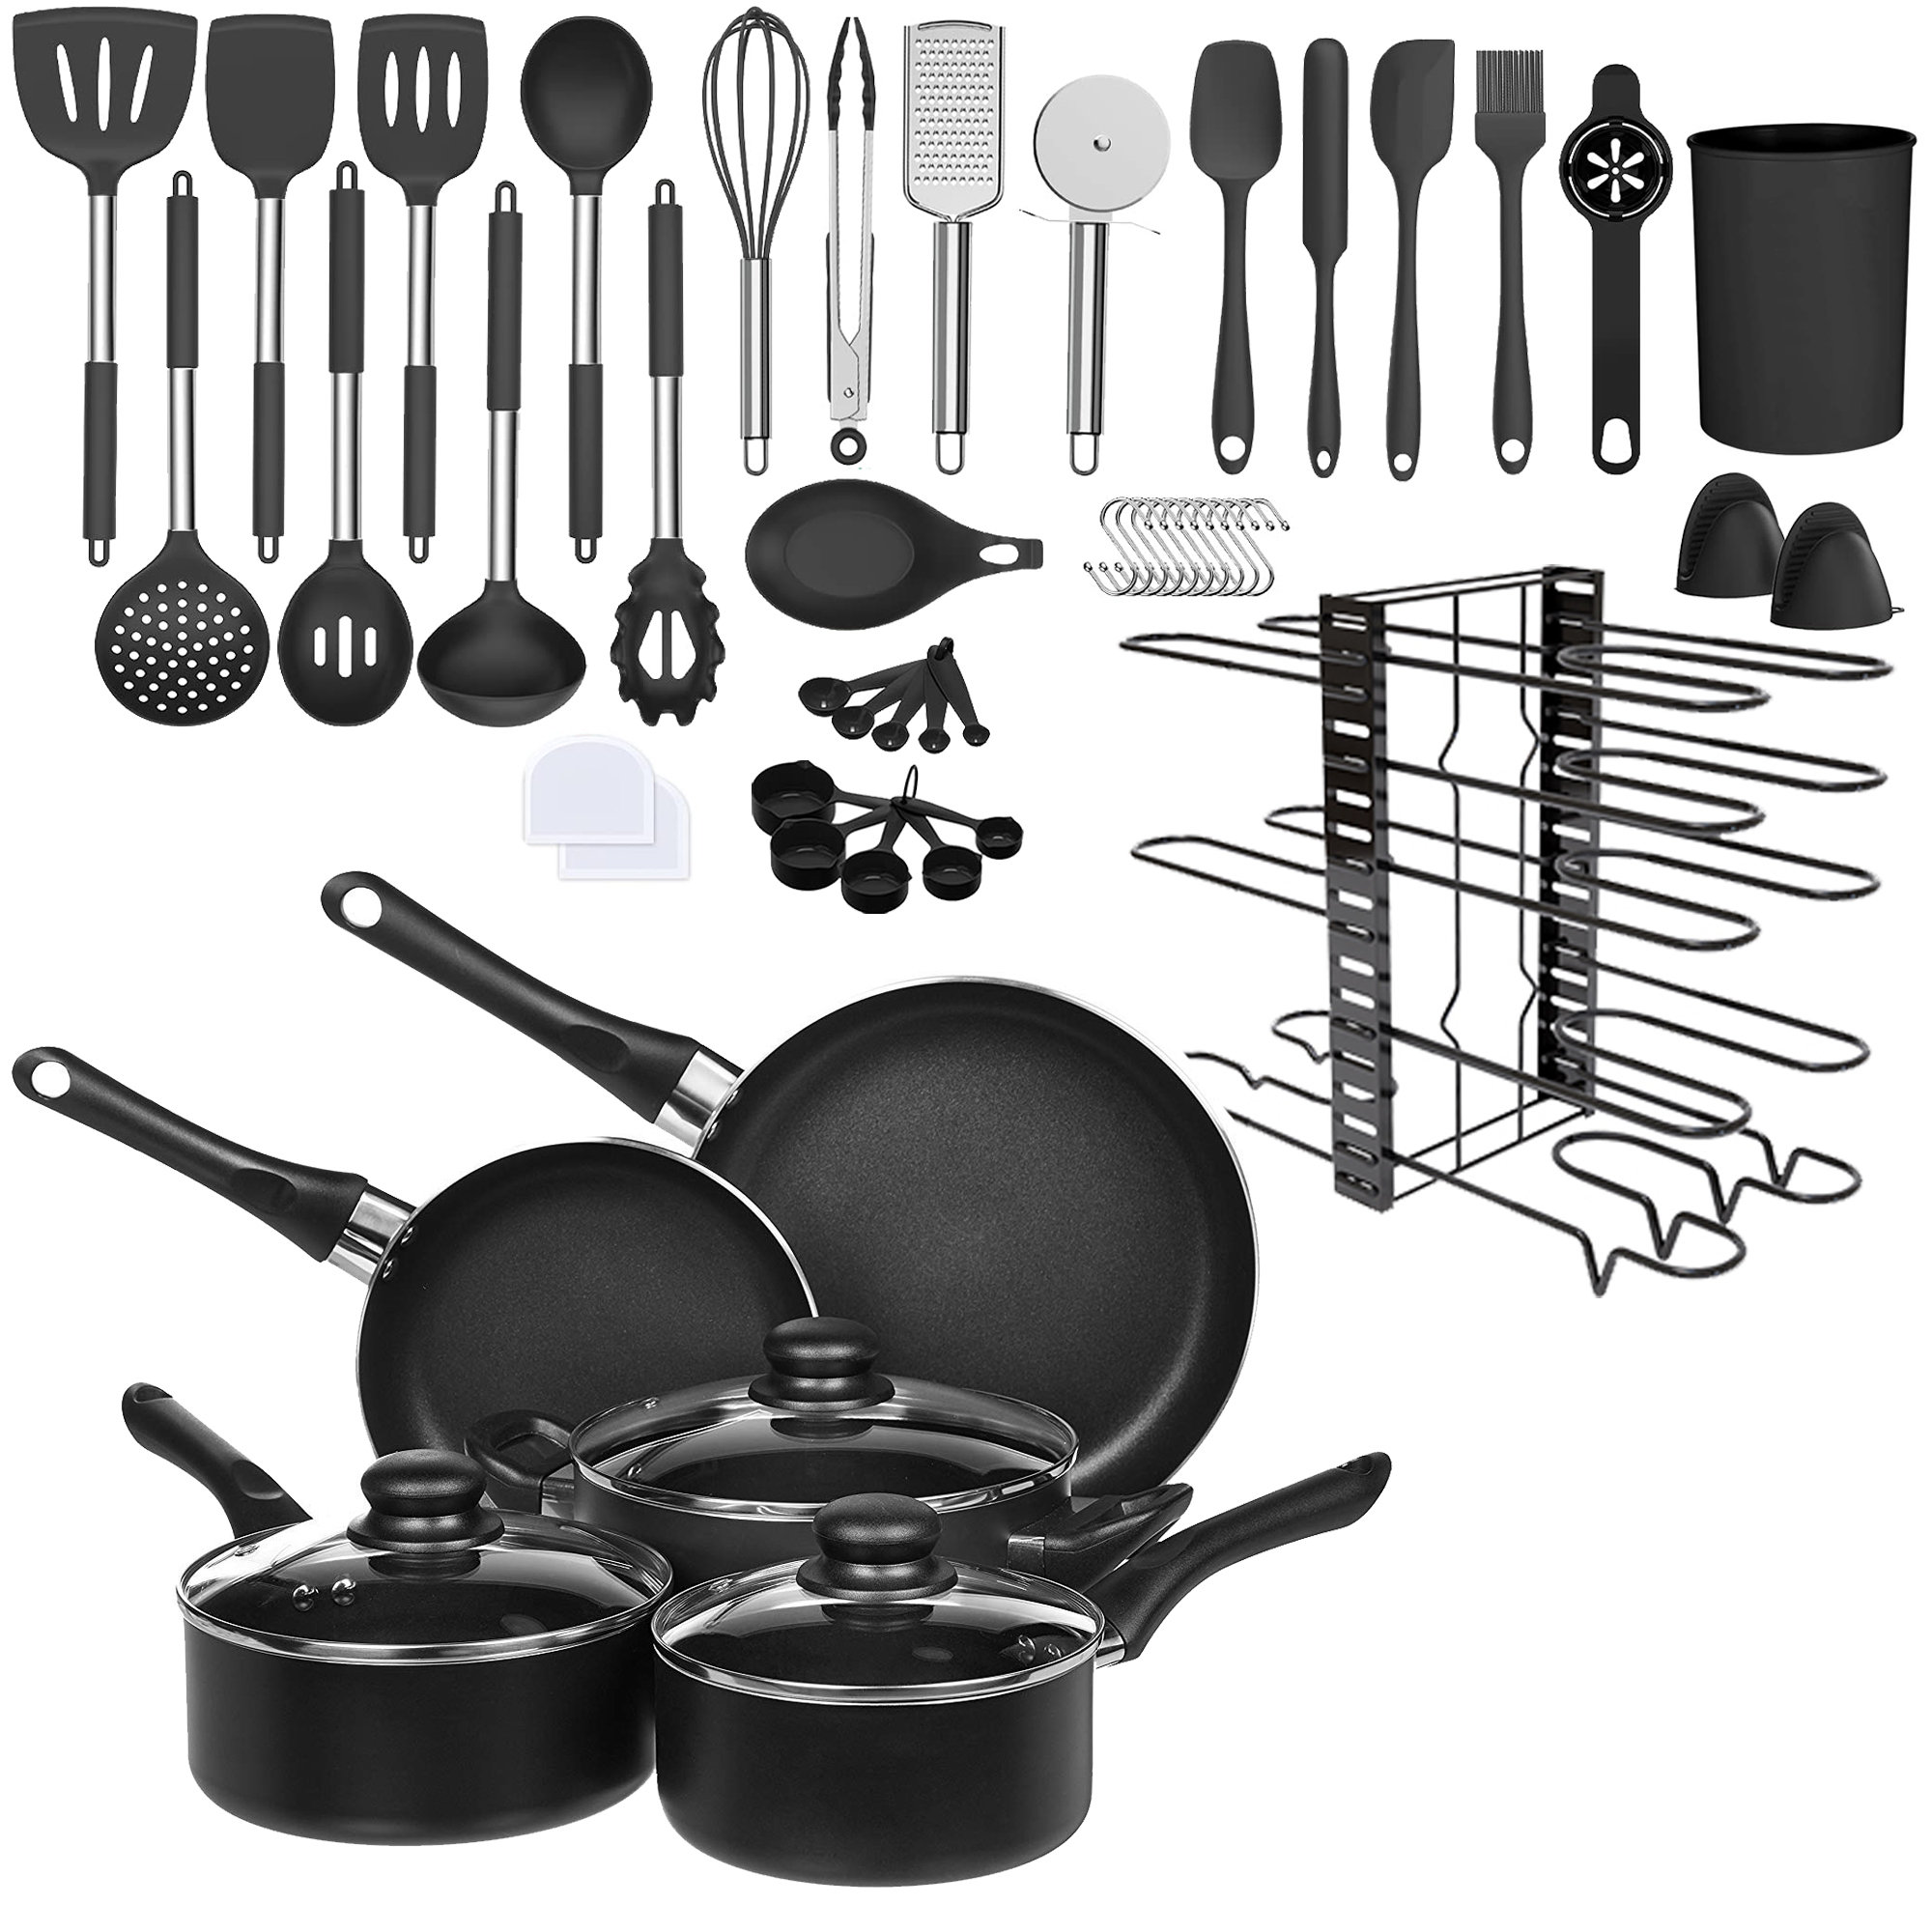 HD 11pcs Kitchen Utensils Nonstick Cookware Set Cooking Pot Set